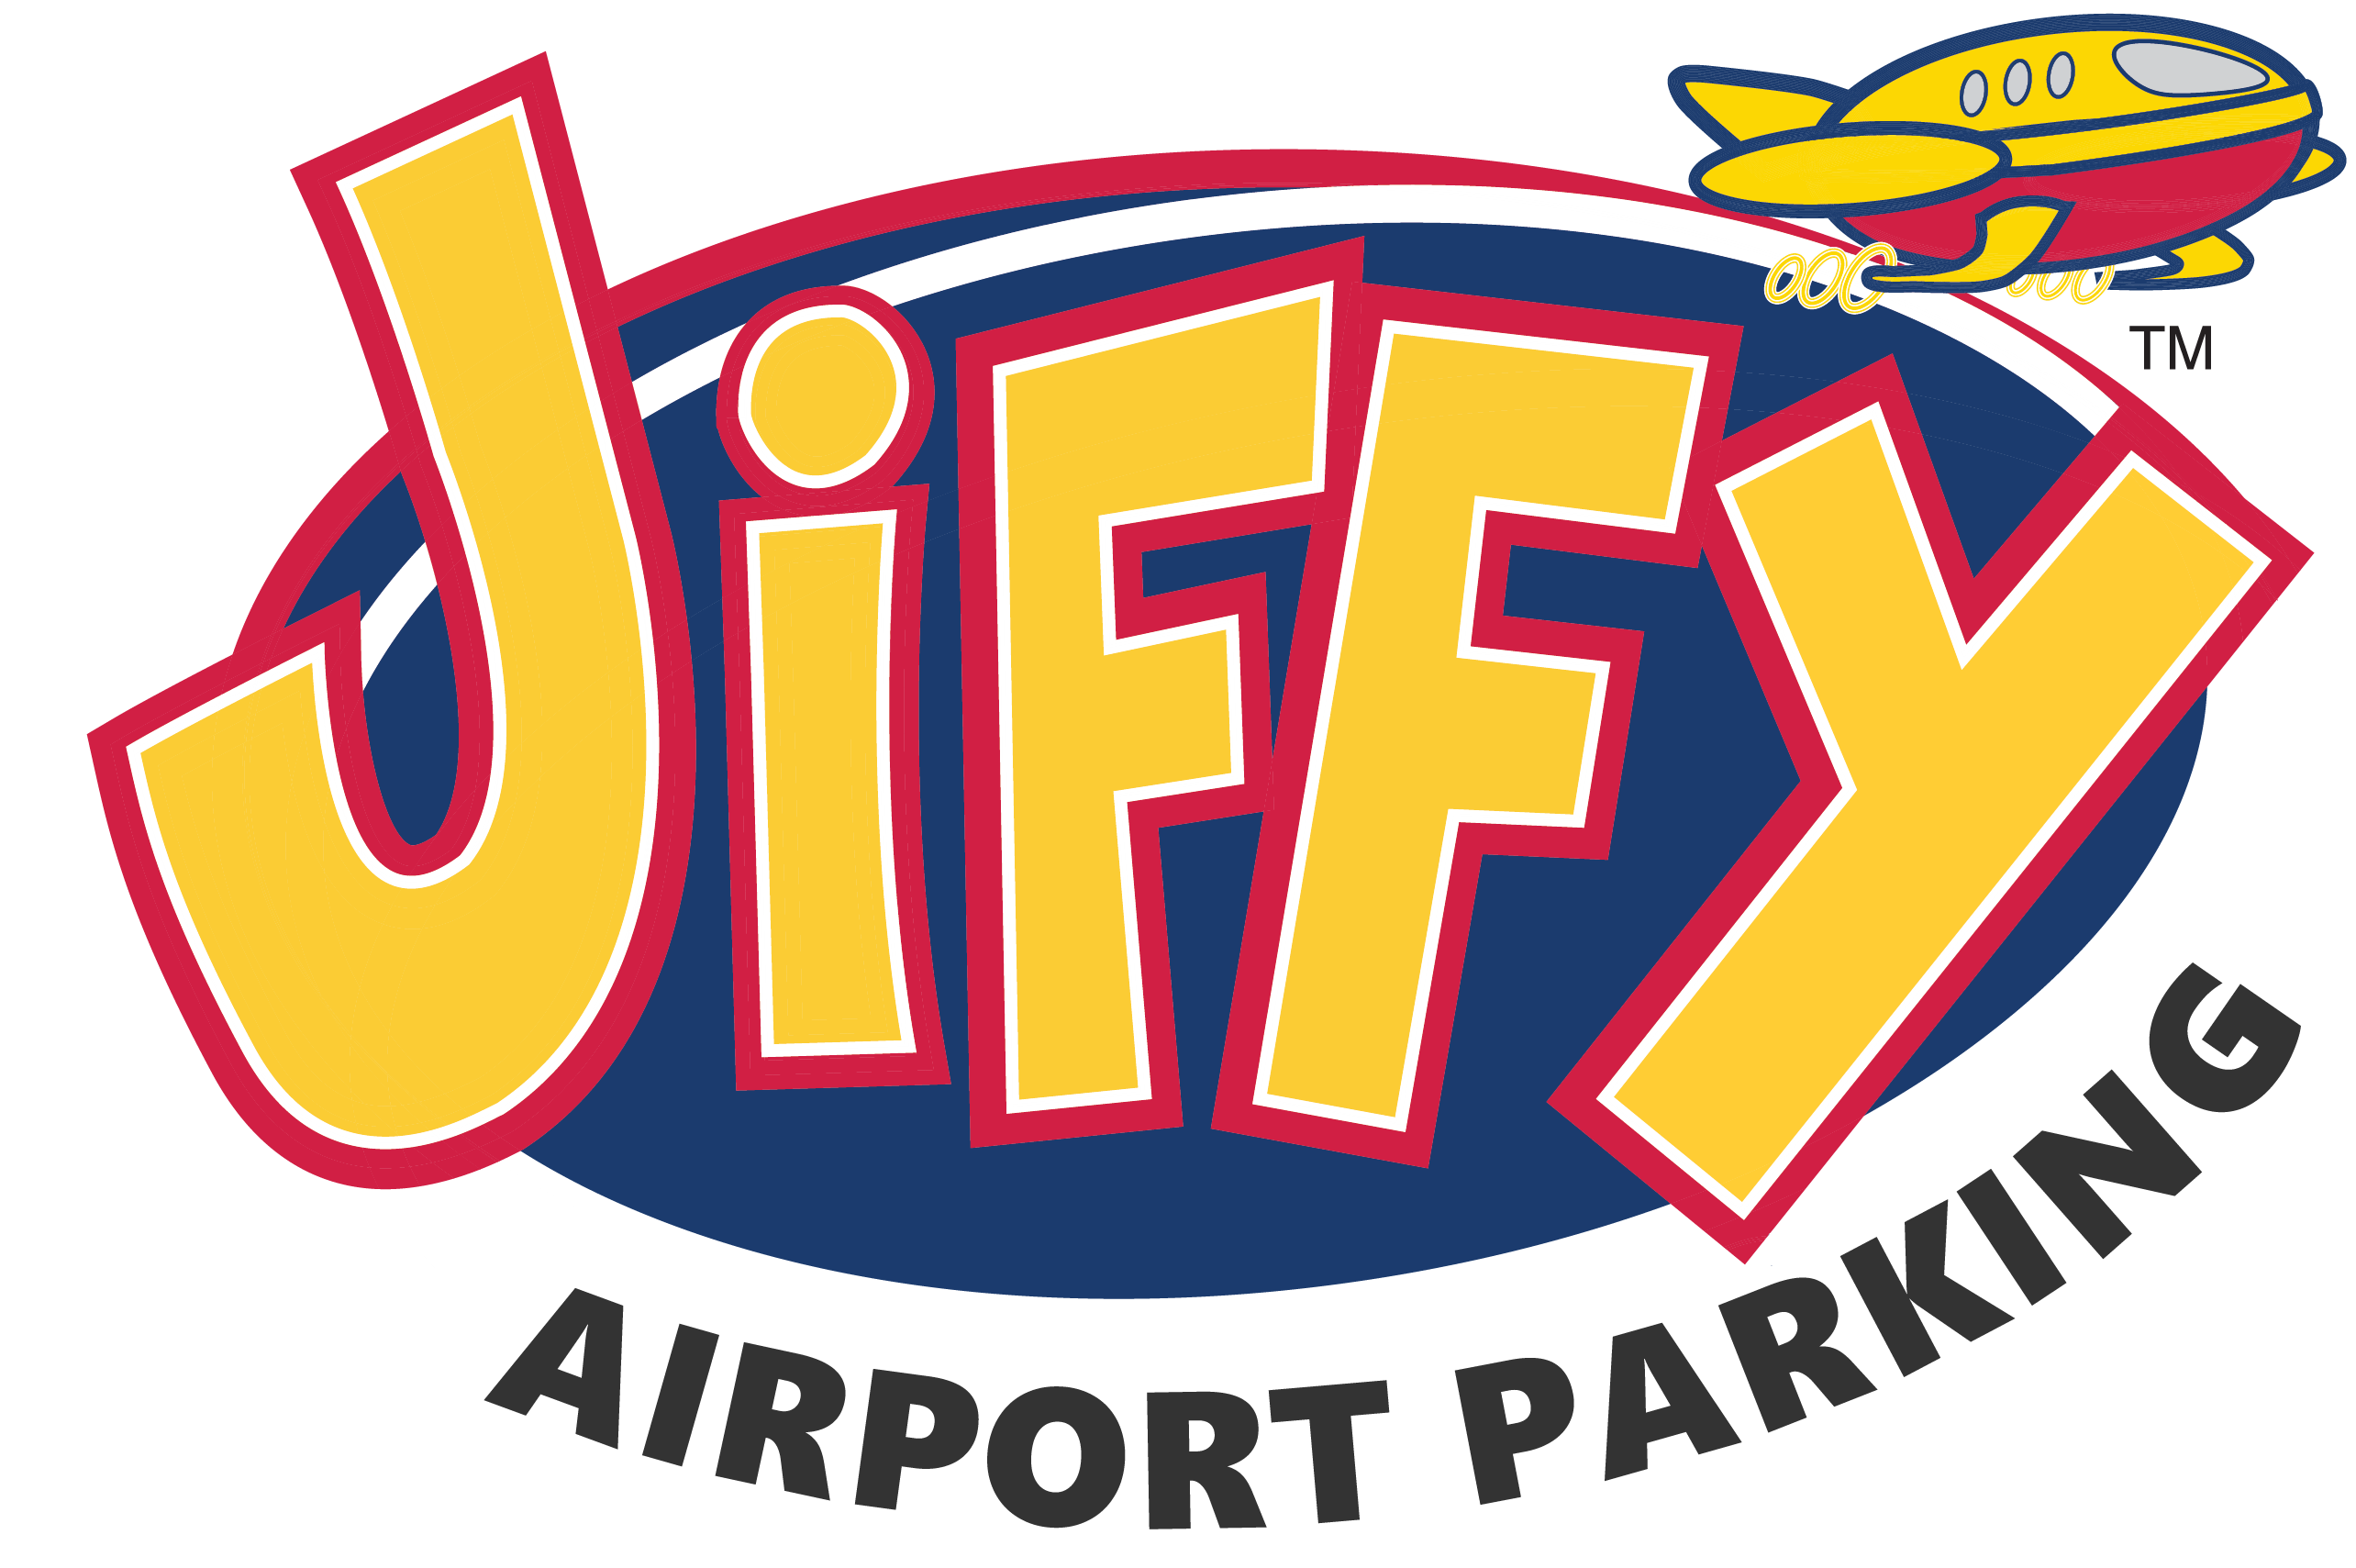 Jiffy Atlanta